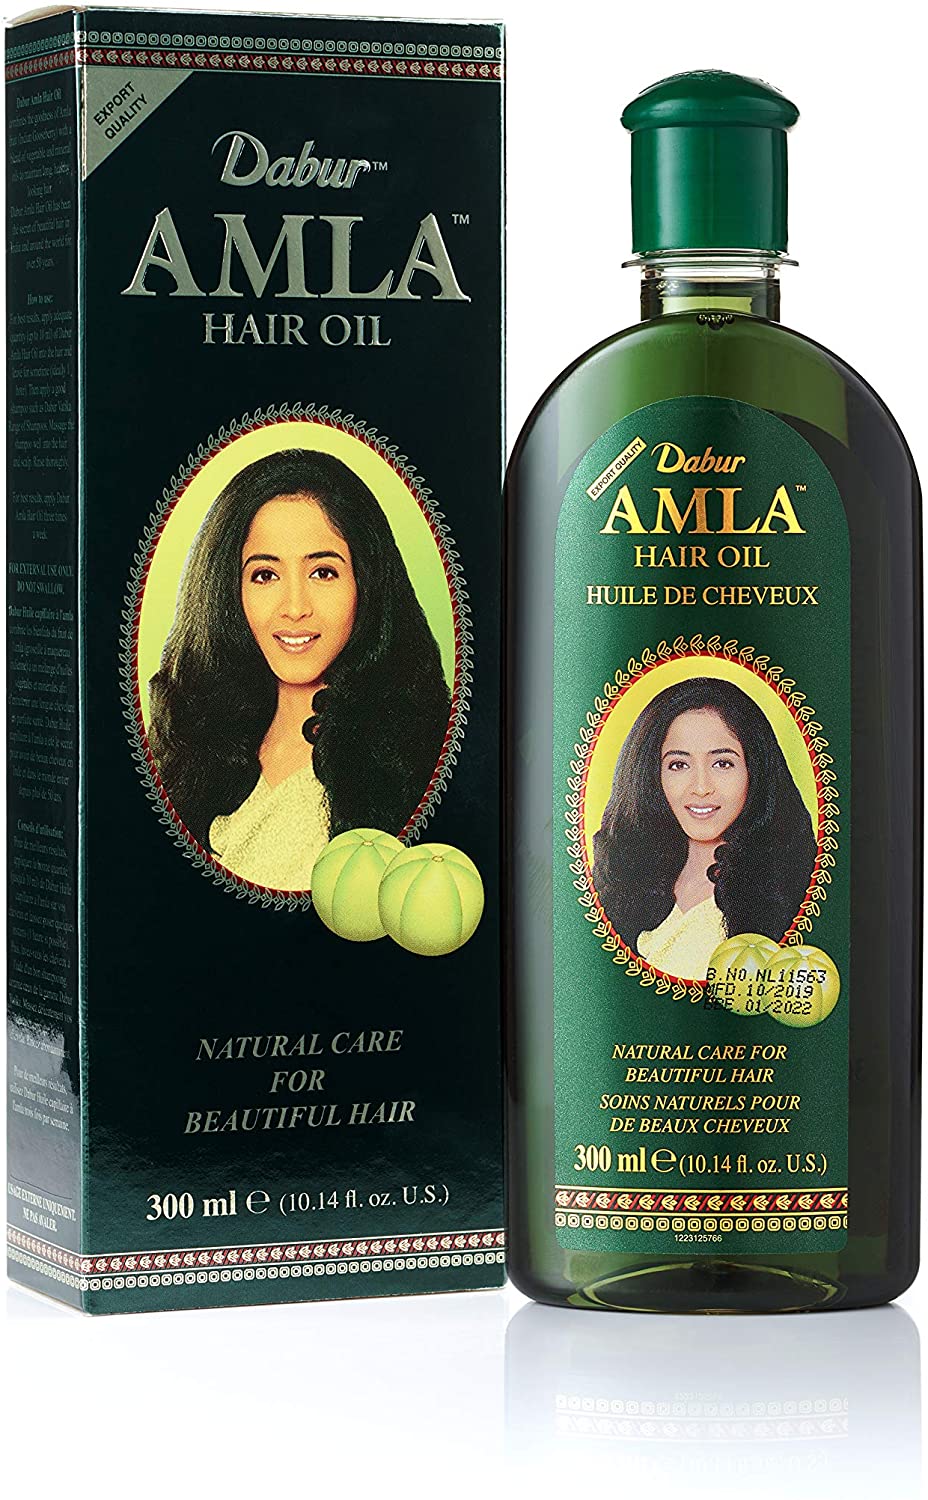  Dabur Amla Hair Oil 500ml - 100% Natural, Enhances